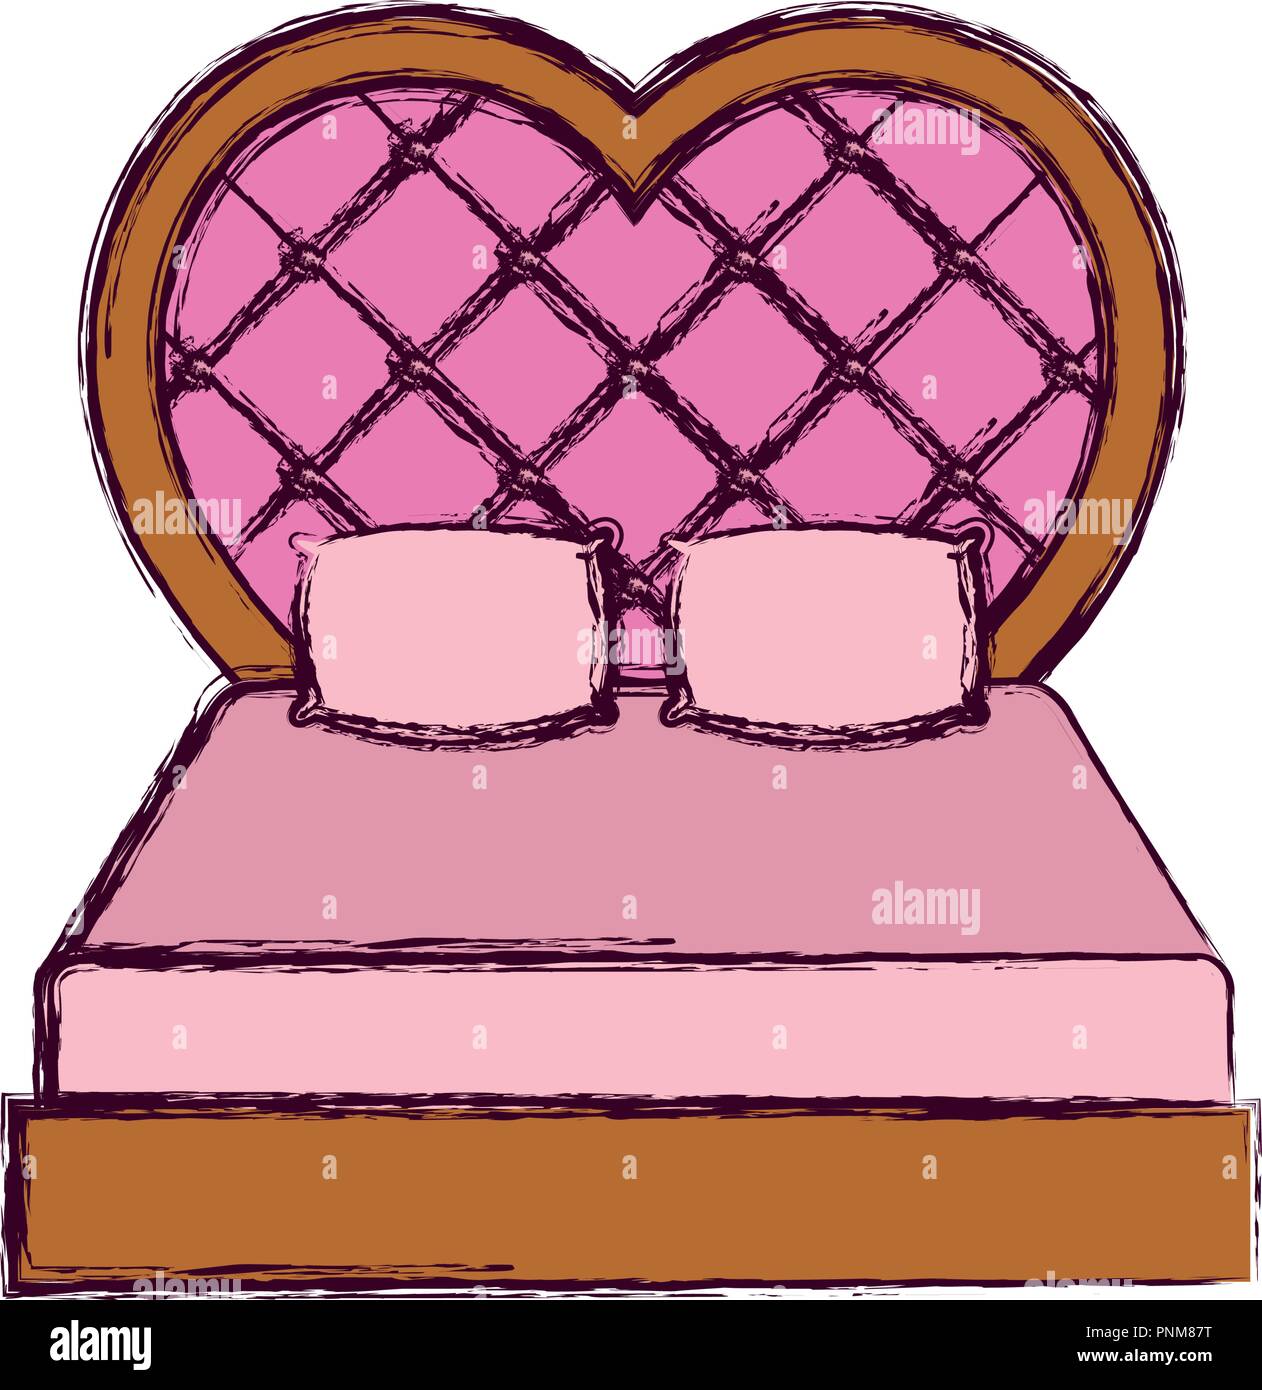 Bett in Herzform mit weißem Hintergrund, Vector Illustration  Stock-Vektorgrafik - Alamy